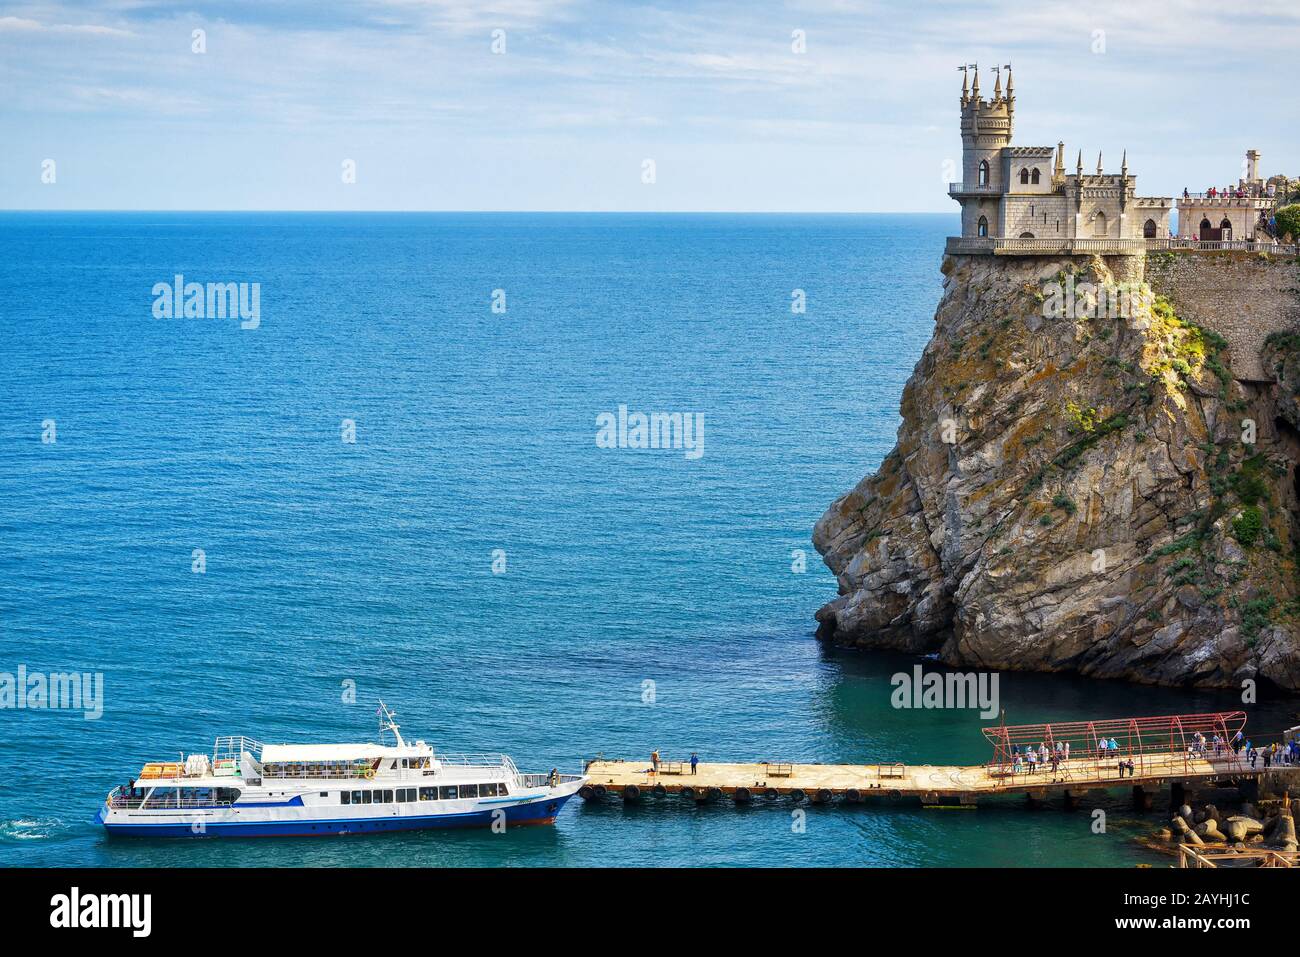 La costa panoramica del Mar Nero in Crimea: Barca turistica al molo e il castello di Swallow Nest sulla roccia Foto Stock